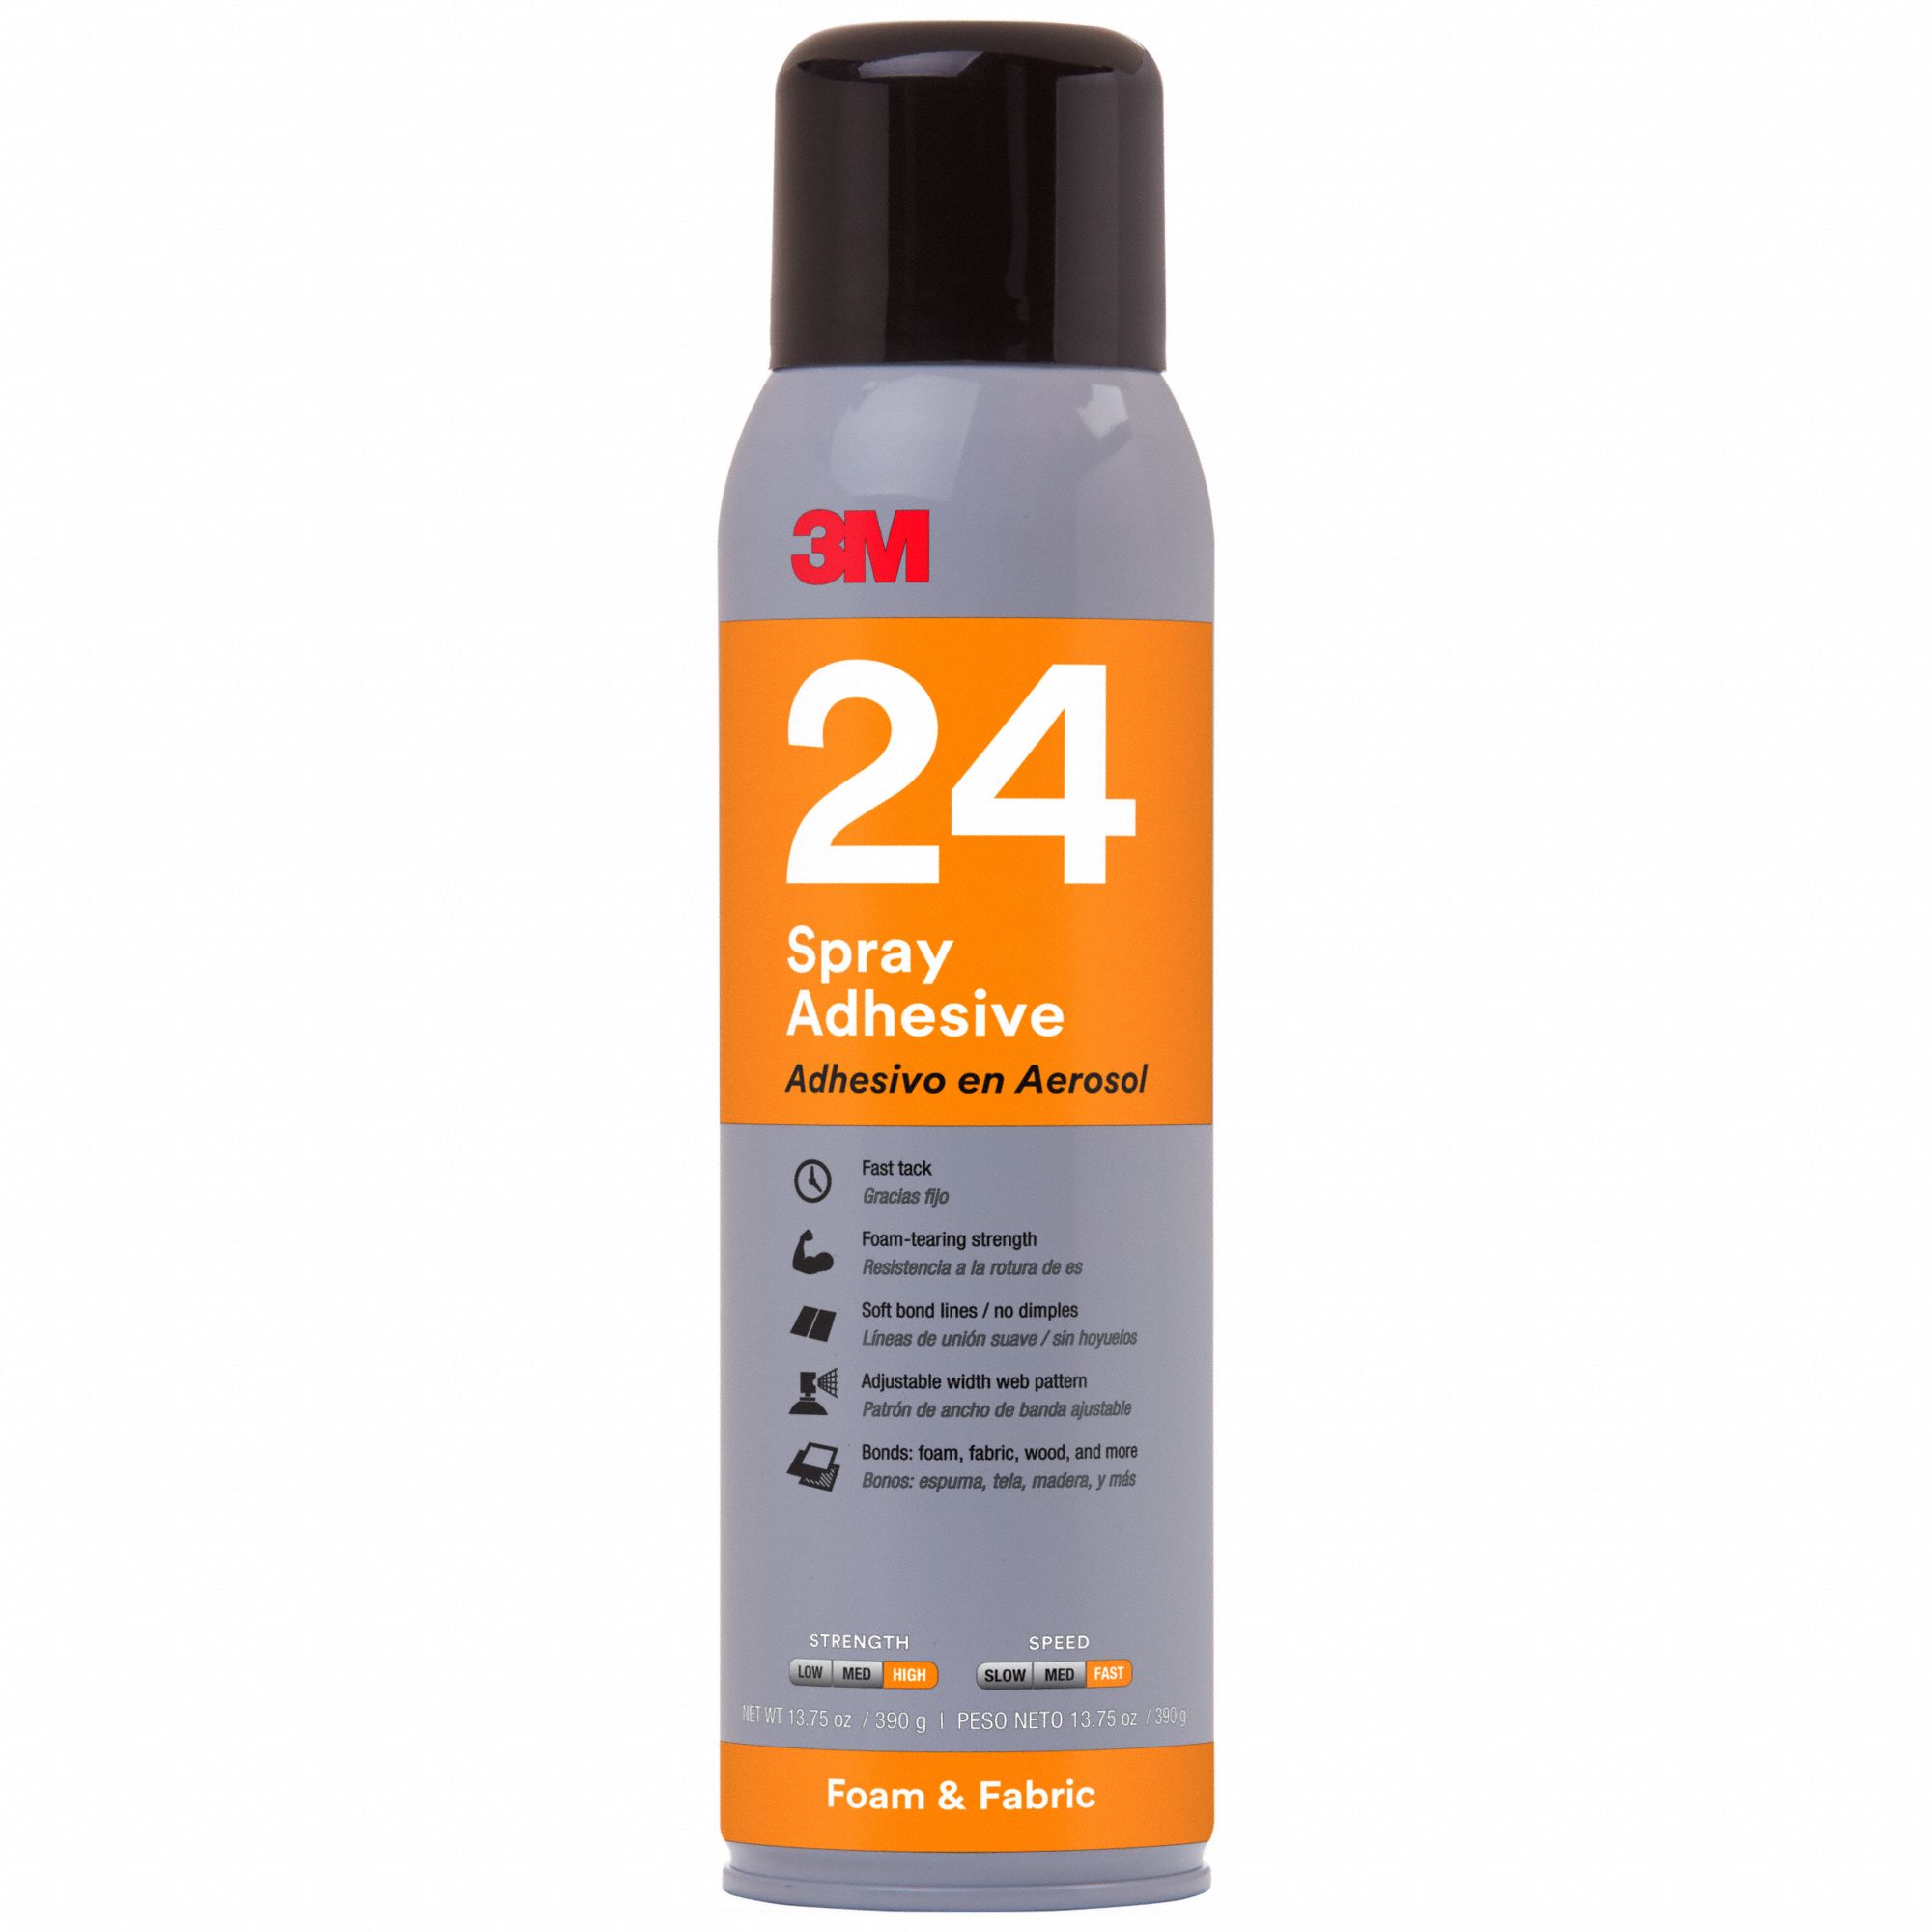 3M Spray Adhesive: 24, Fabrics/Foams, 16 fl oz, Aerosol Can, Orange